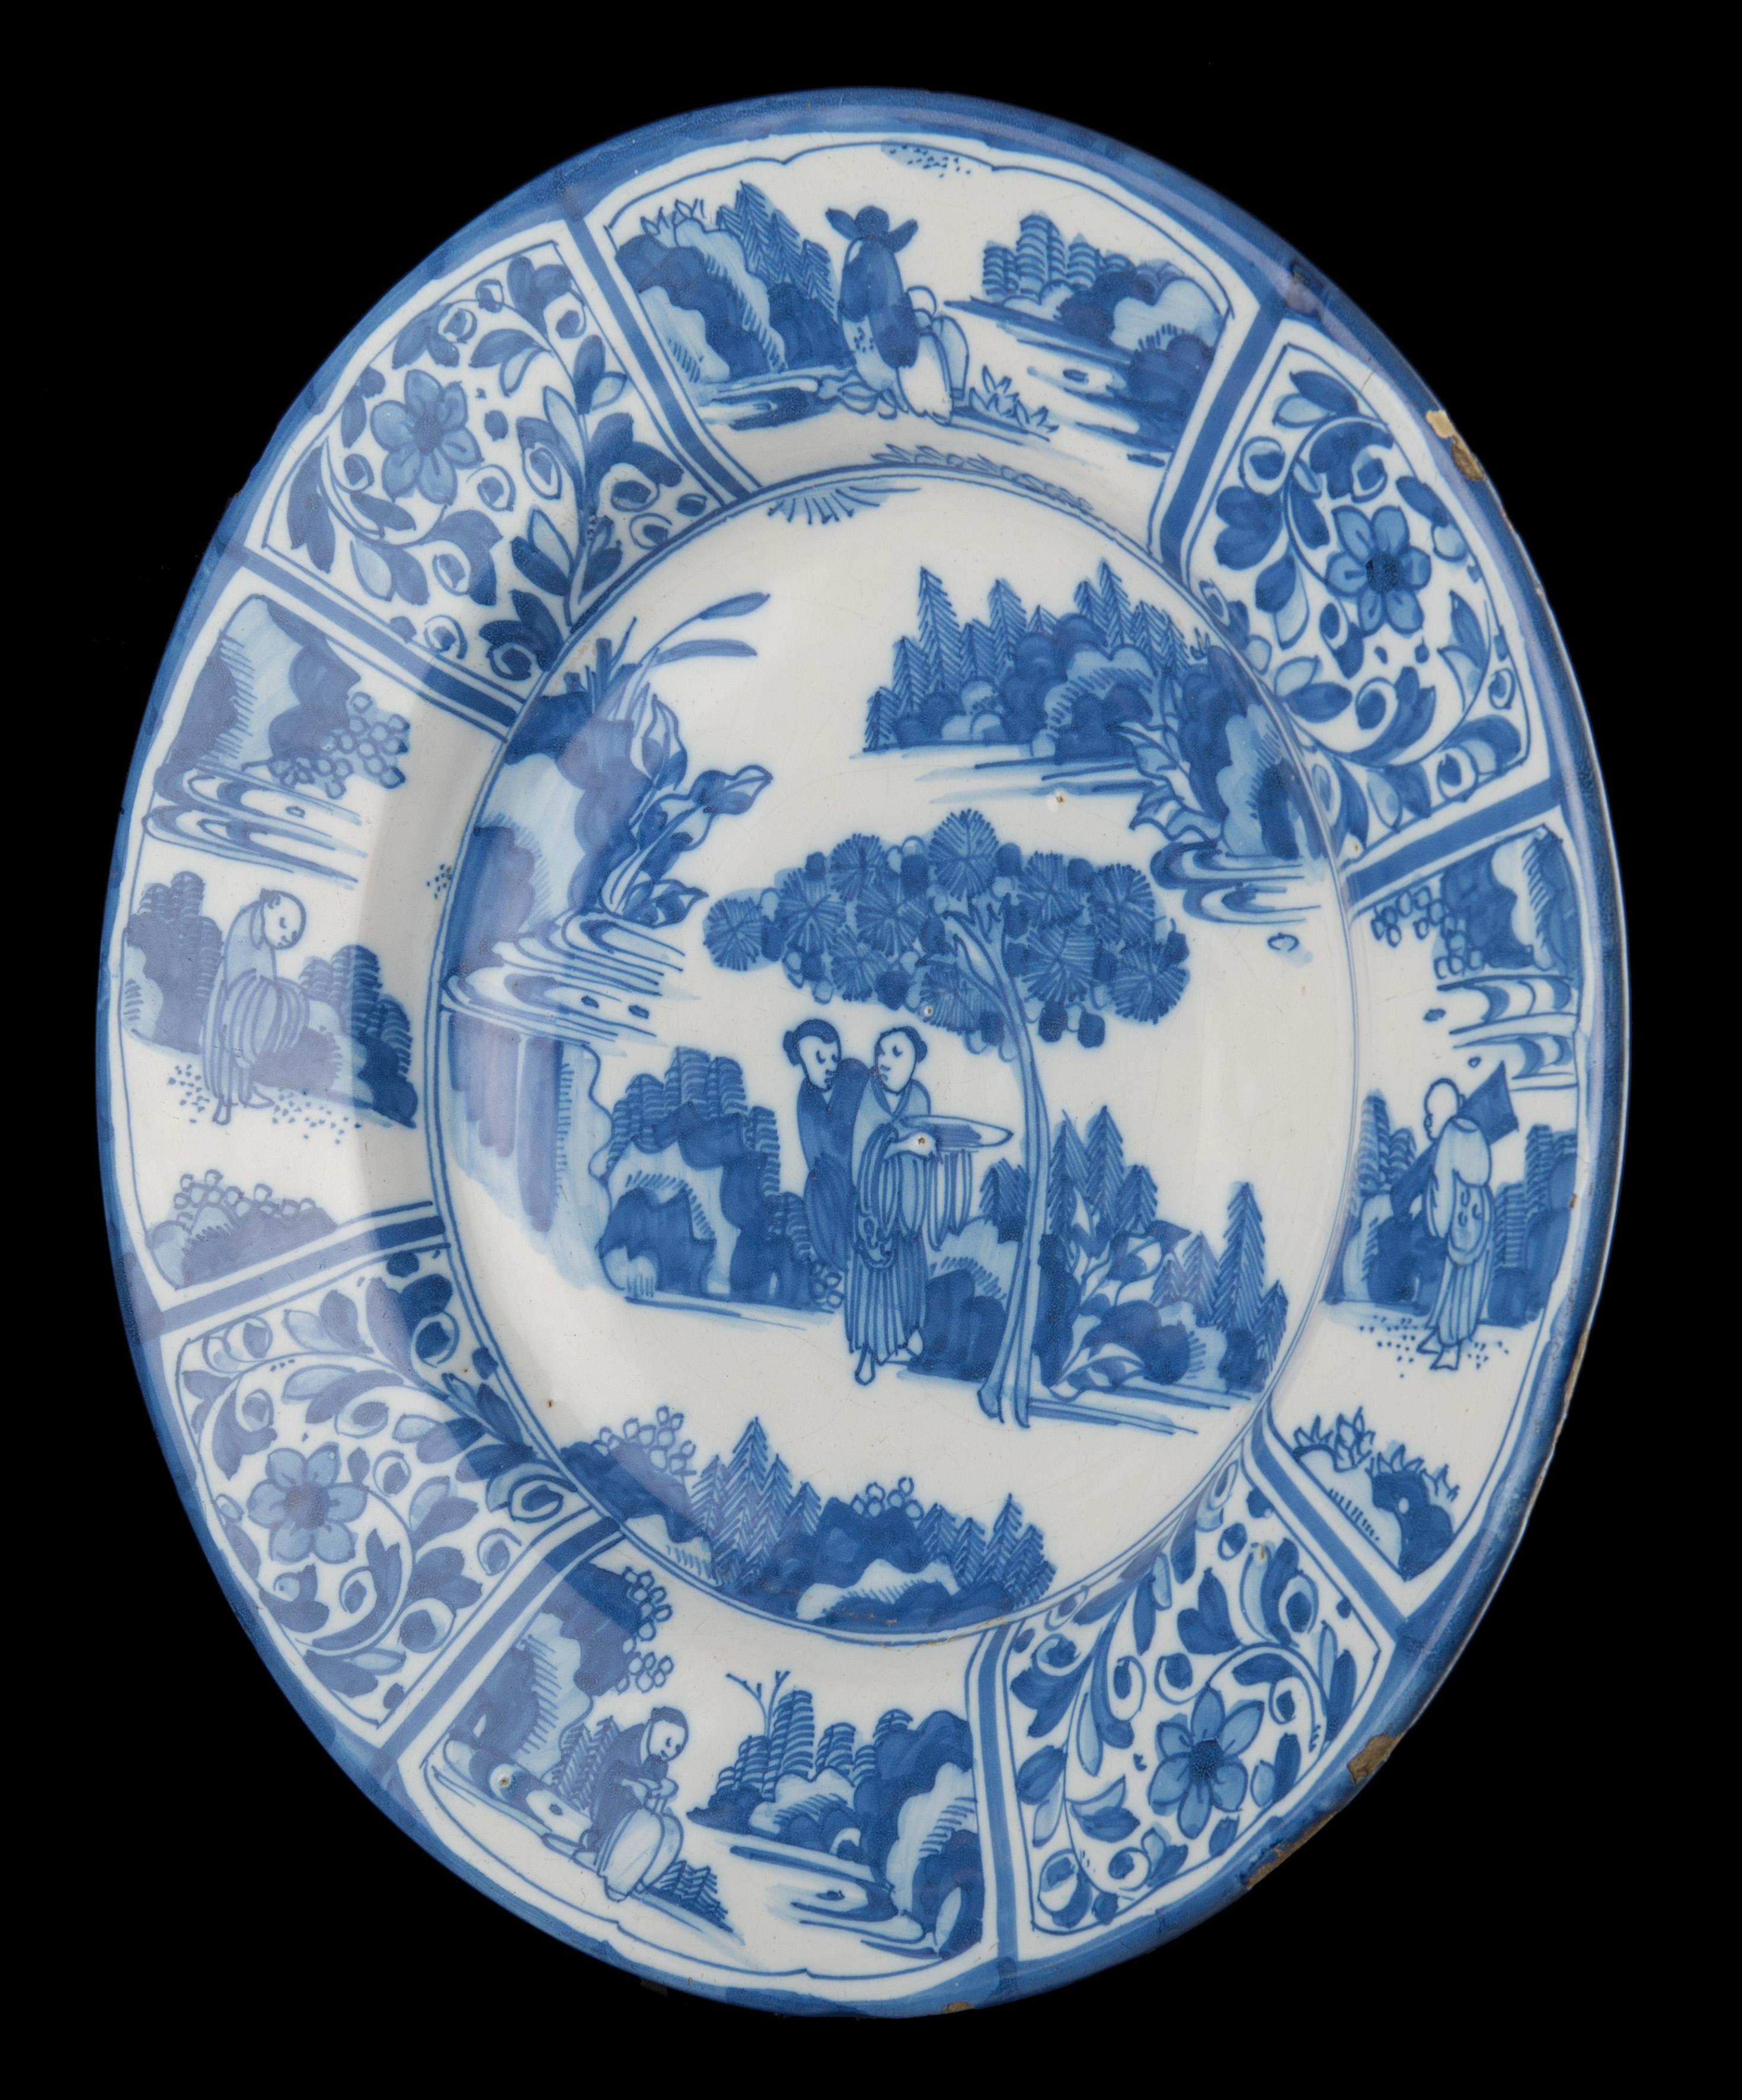 Blaue und weiße Chinoiserie-Schale. Delft, um 1670 

Blau-weiße Schale mit breitem Flansch, in der Mitte zwei sich unterhaltende Chinesen unter einem Baum in einer orientalischen Landschaft. Ein Mann trägt eine Schüssel. Die achtteilige Bordüre ist